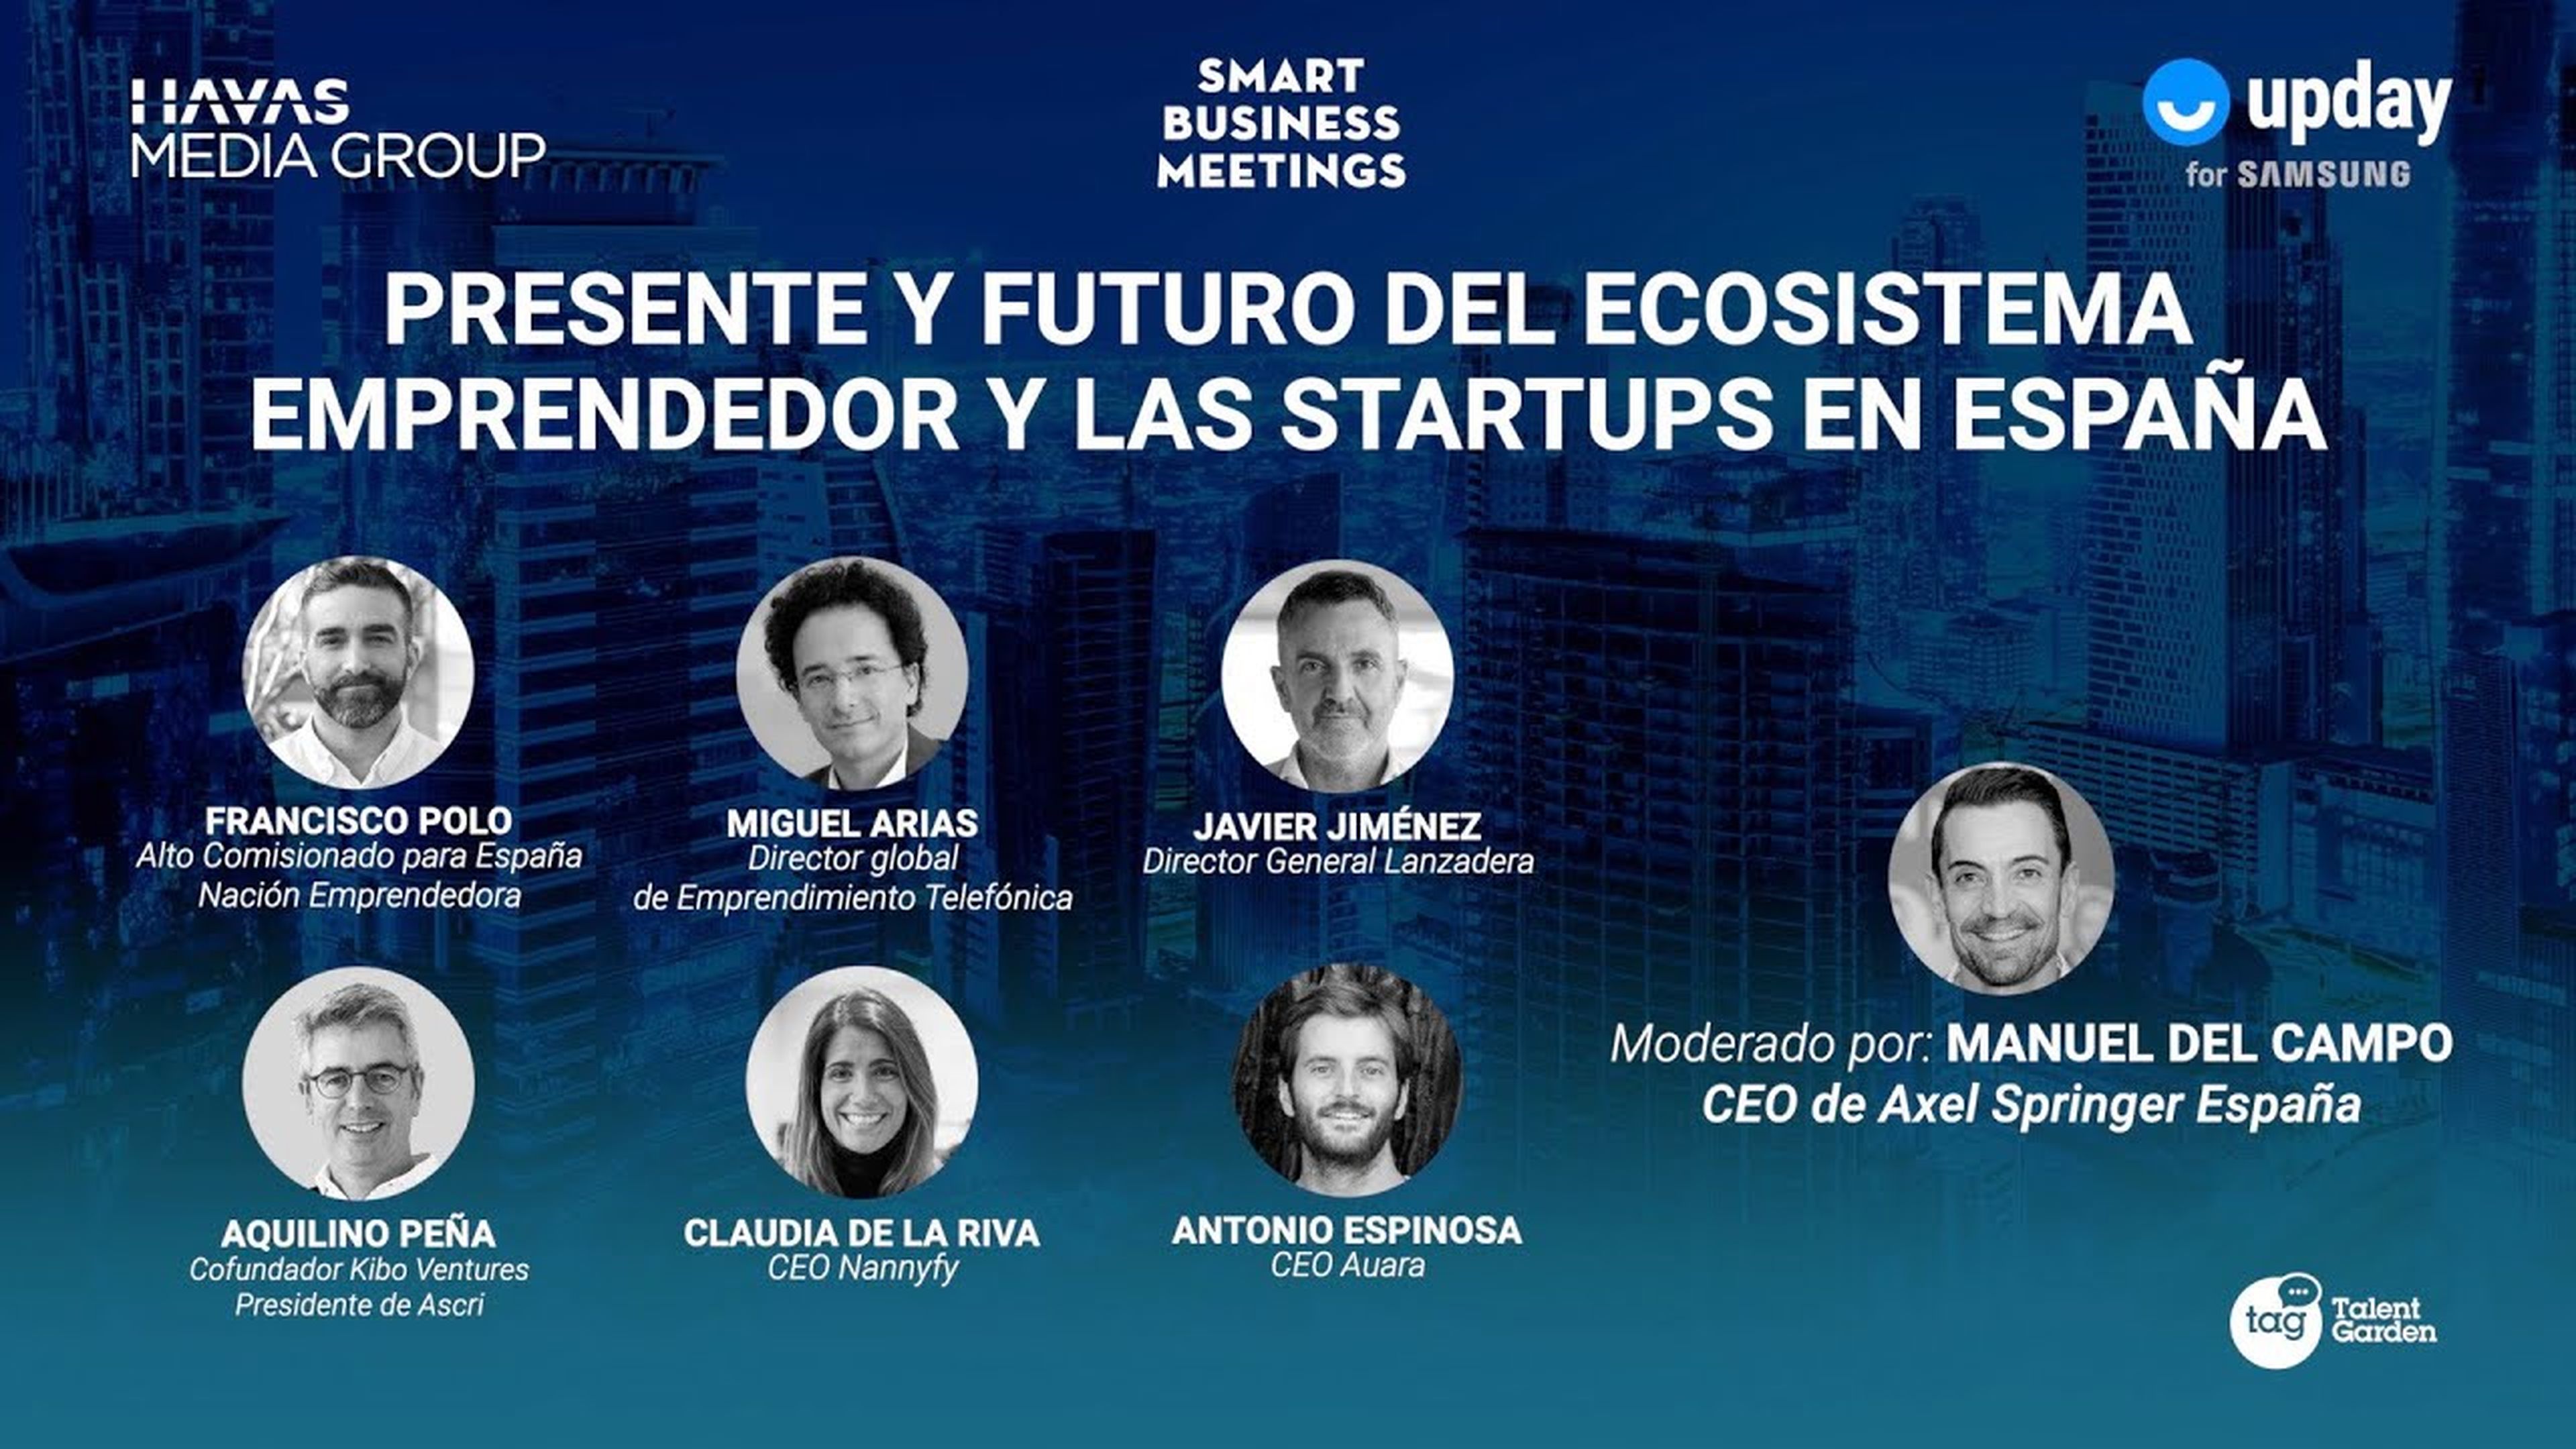 SMART BUSINESS MEETING: Presente y futuro del ecosistema emprendedor y las startups